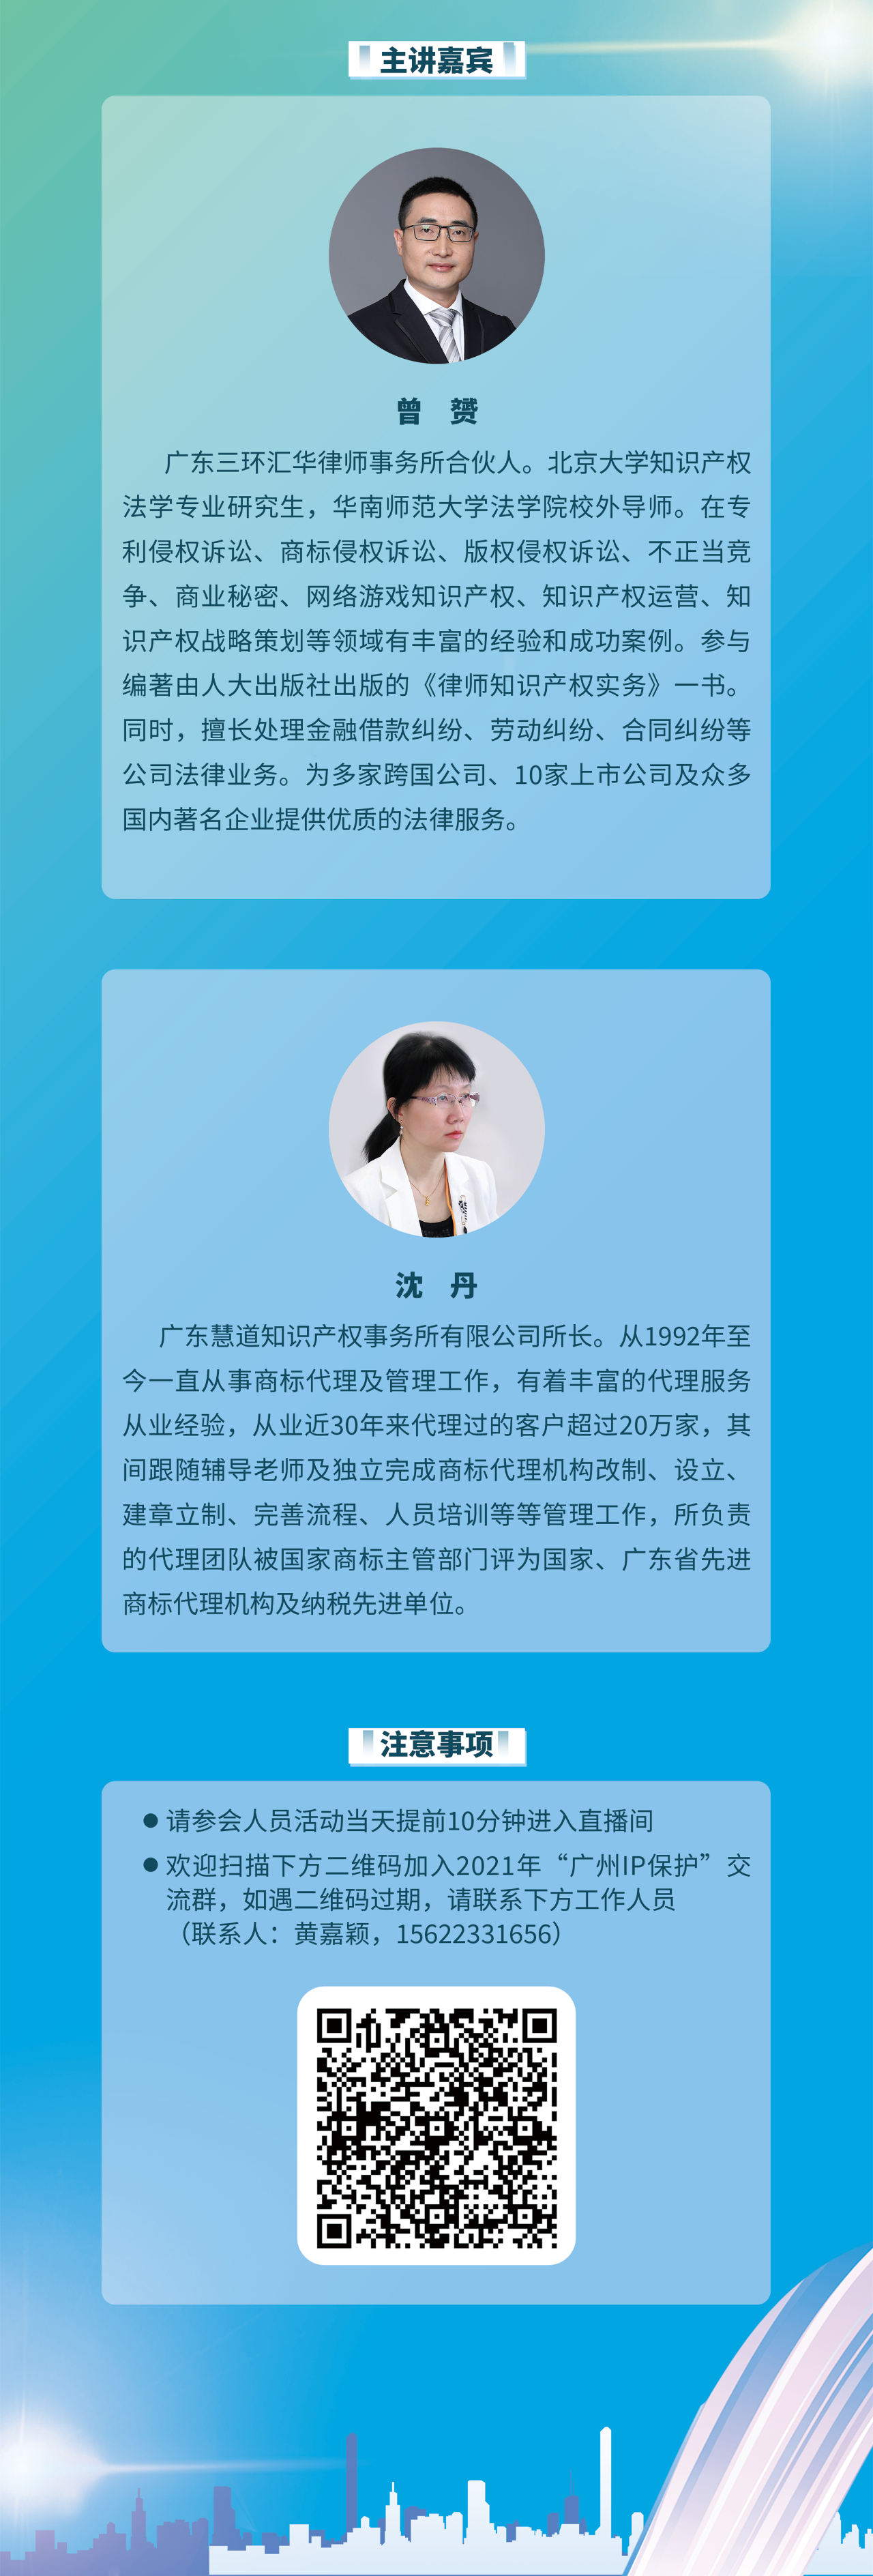 2021“广州IP保护”线上公益课堂——大咖带你解读知识产权法规上新